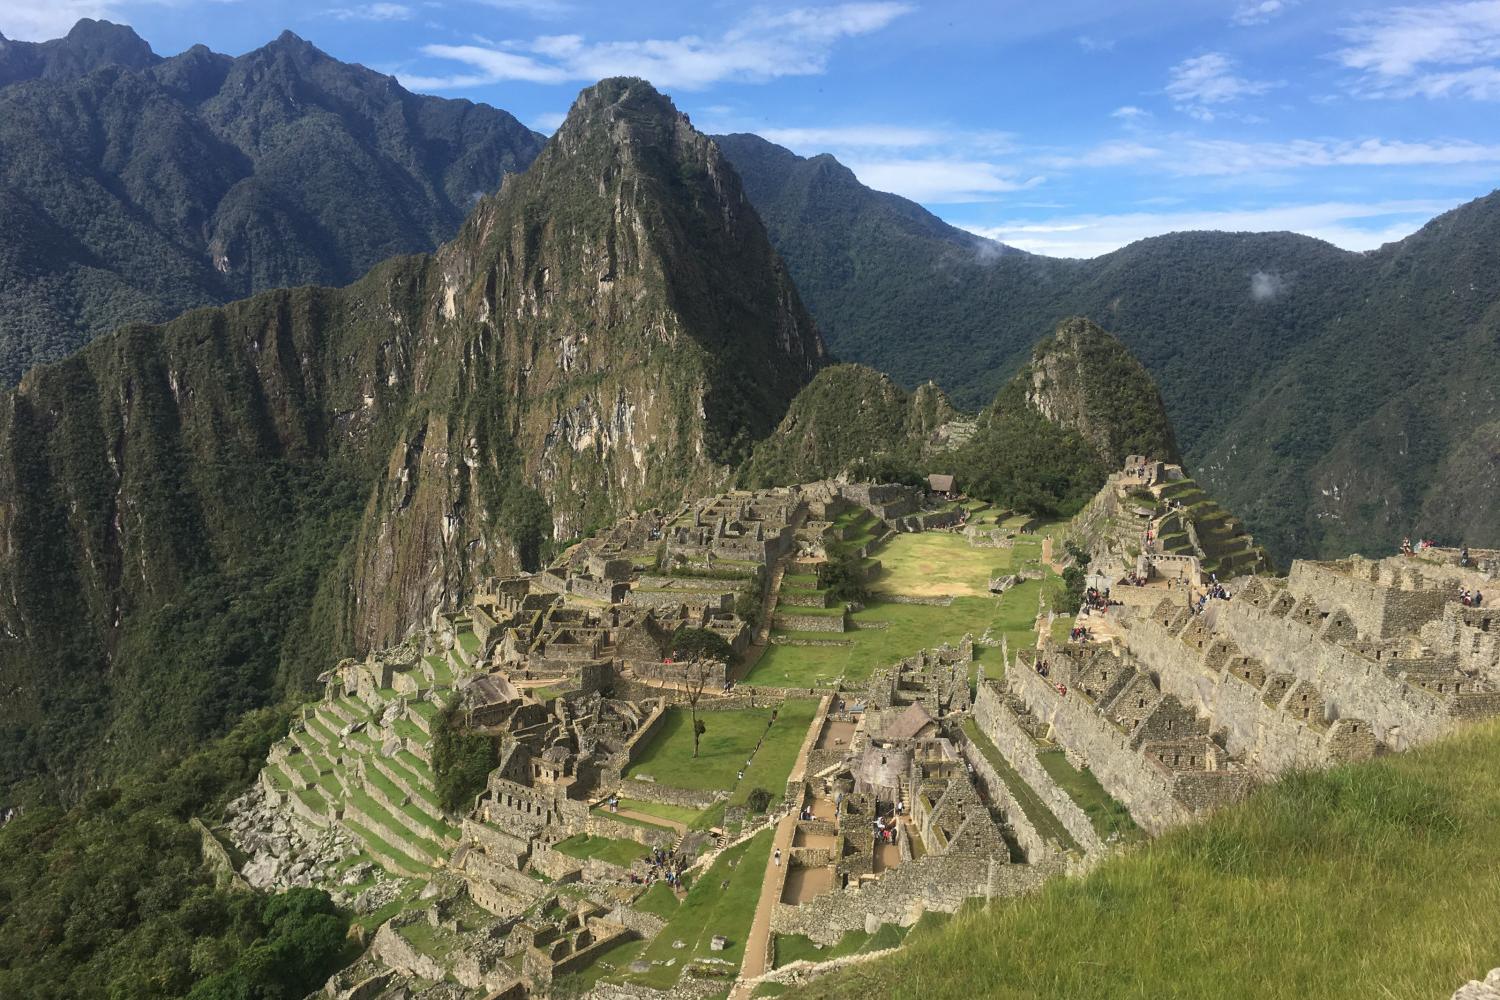 Machu Picchu in Peru, taken by a Carthage student.